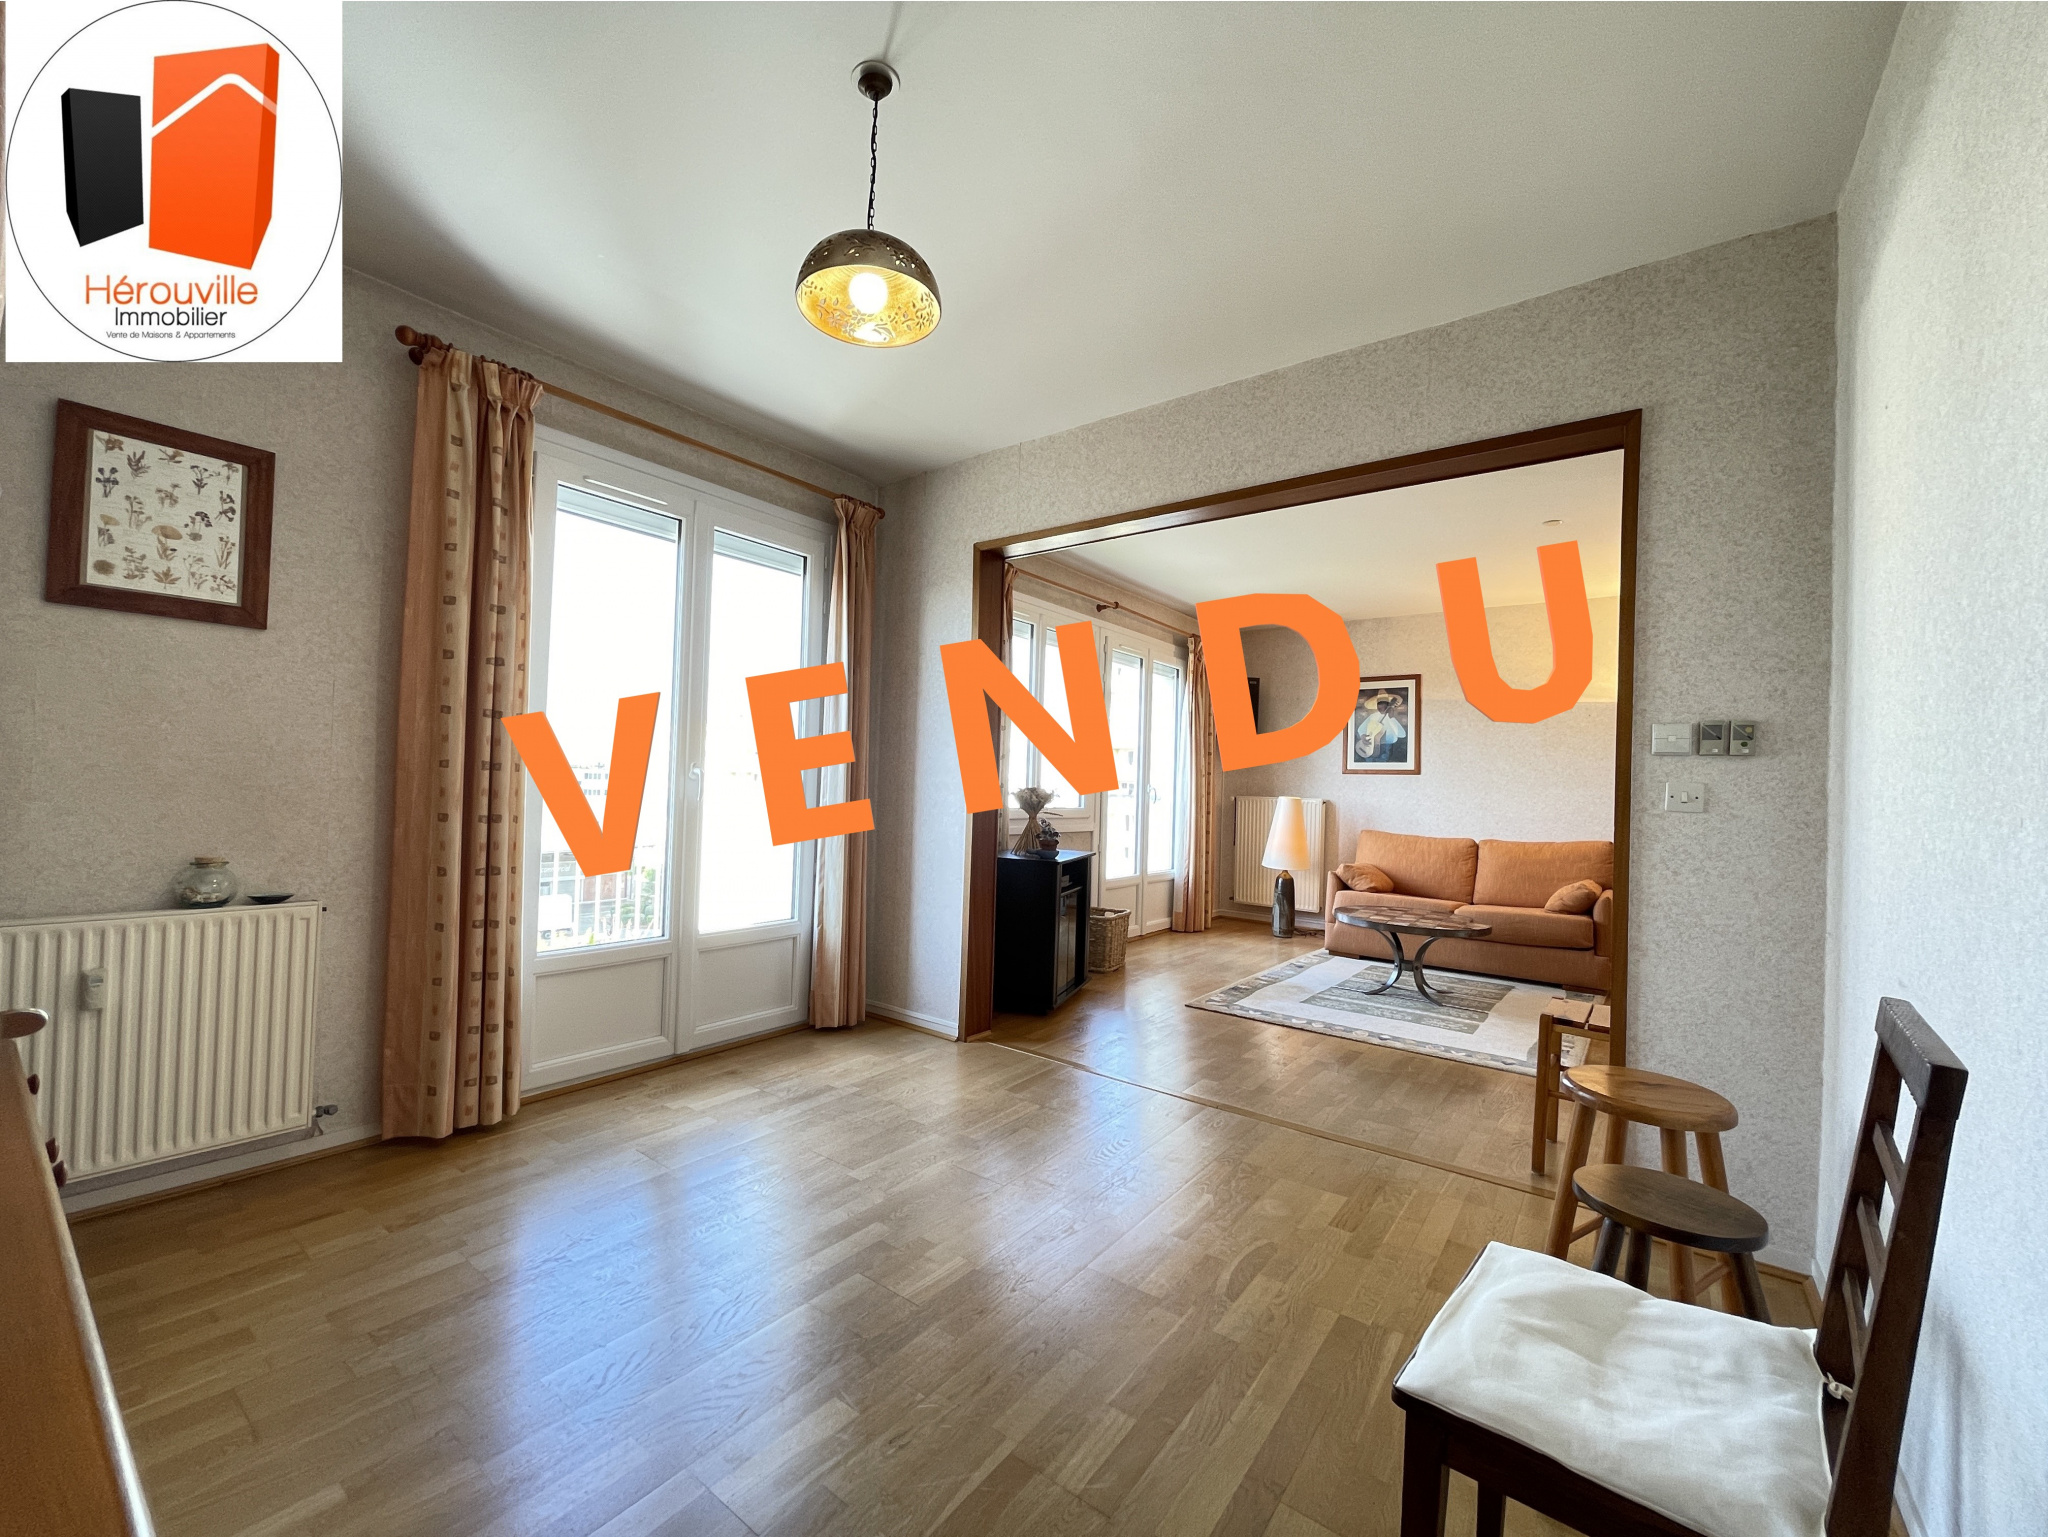 Vente Appartement 81m² 4 Pièces à Hérouville-Saint-Clair (14200) - Herouville Immobilier